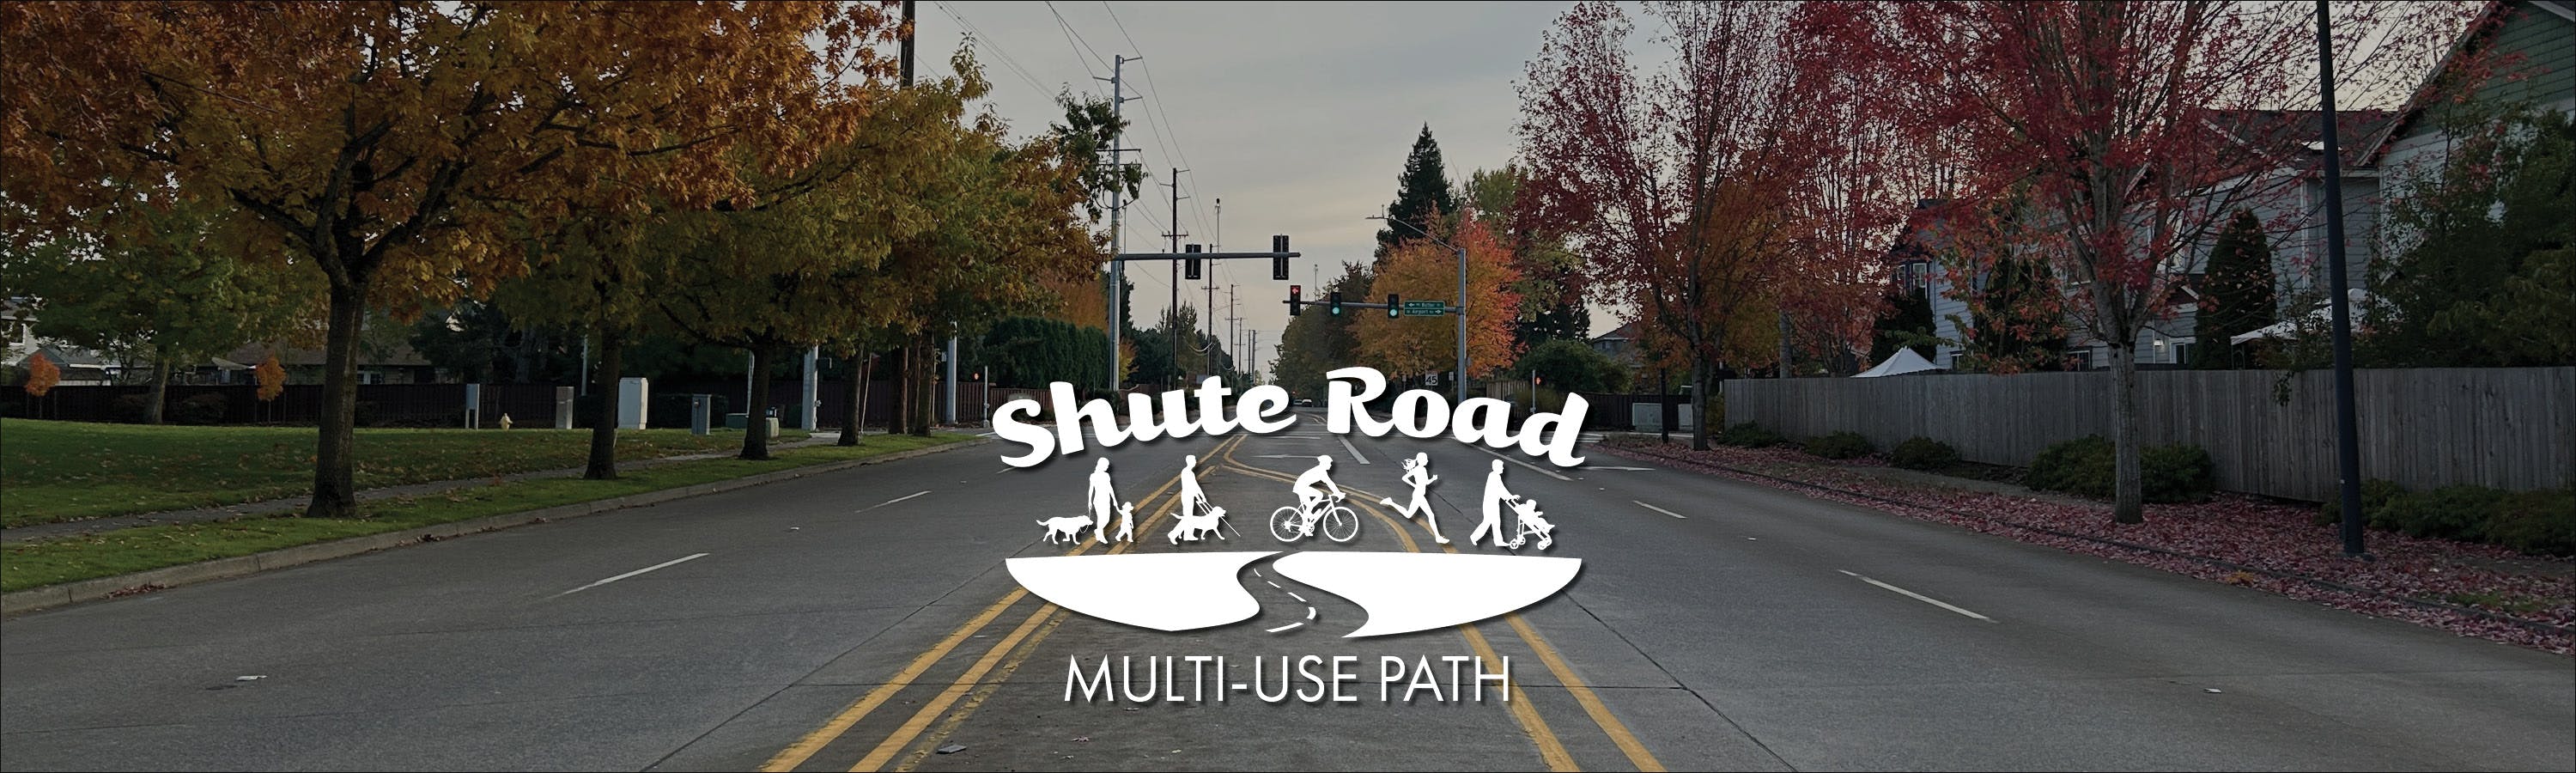 Shute Road Multi-Use Path logo